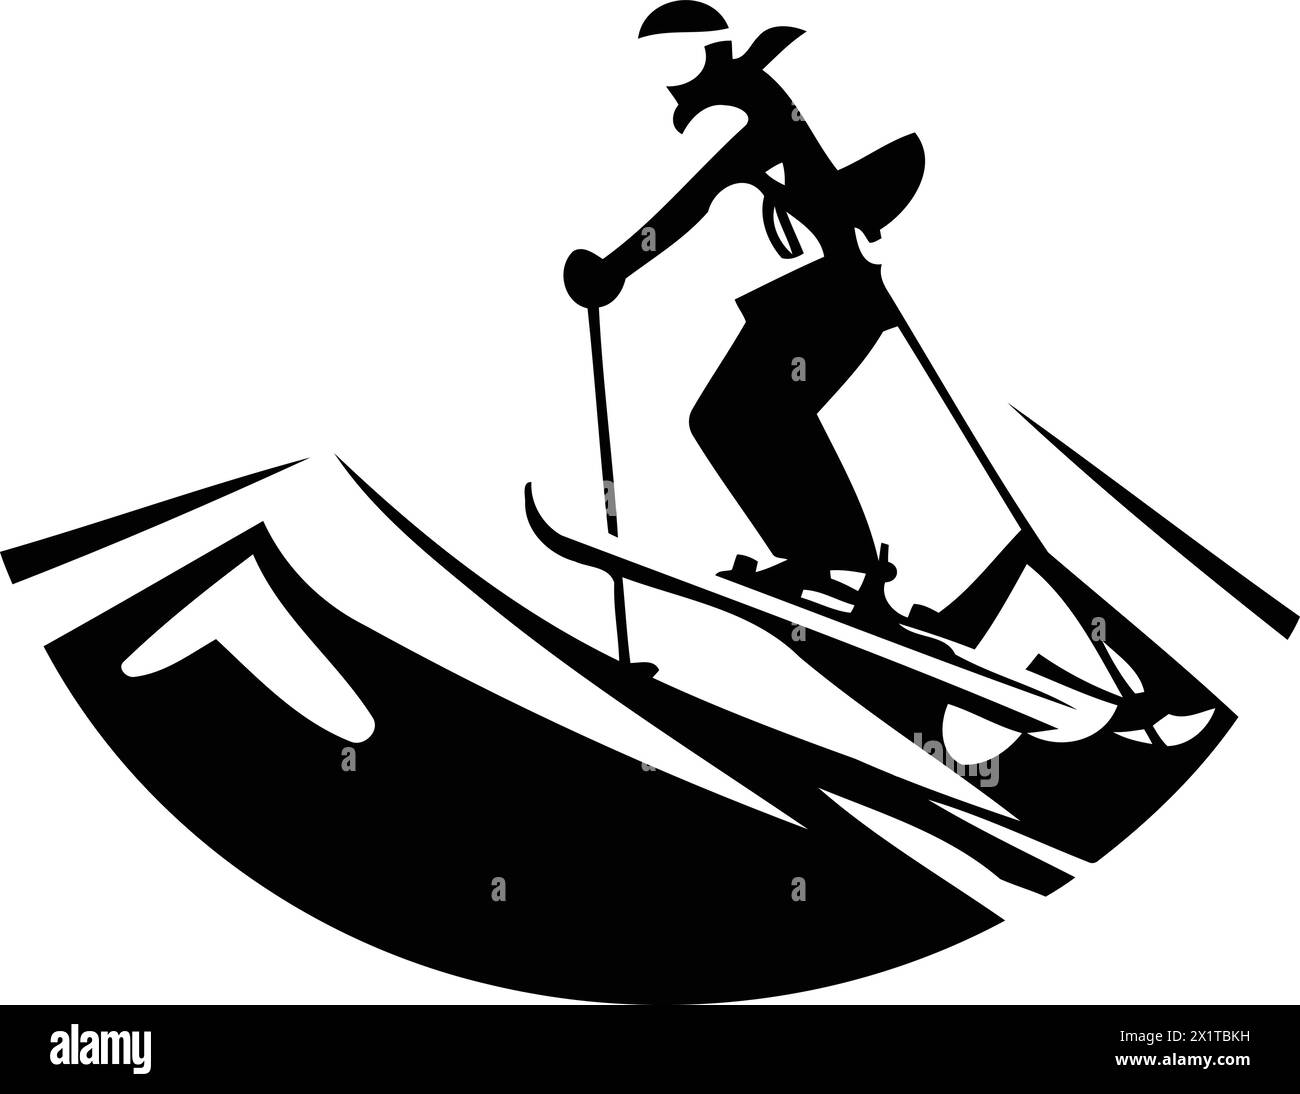 Snowboarder en montagne. Sports d'hiver extrêmes. Illustration vectorielle. Illustration de Vecteur